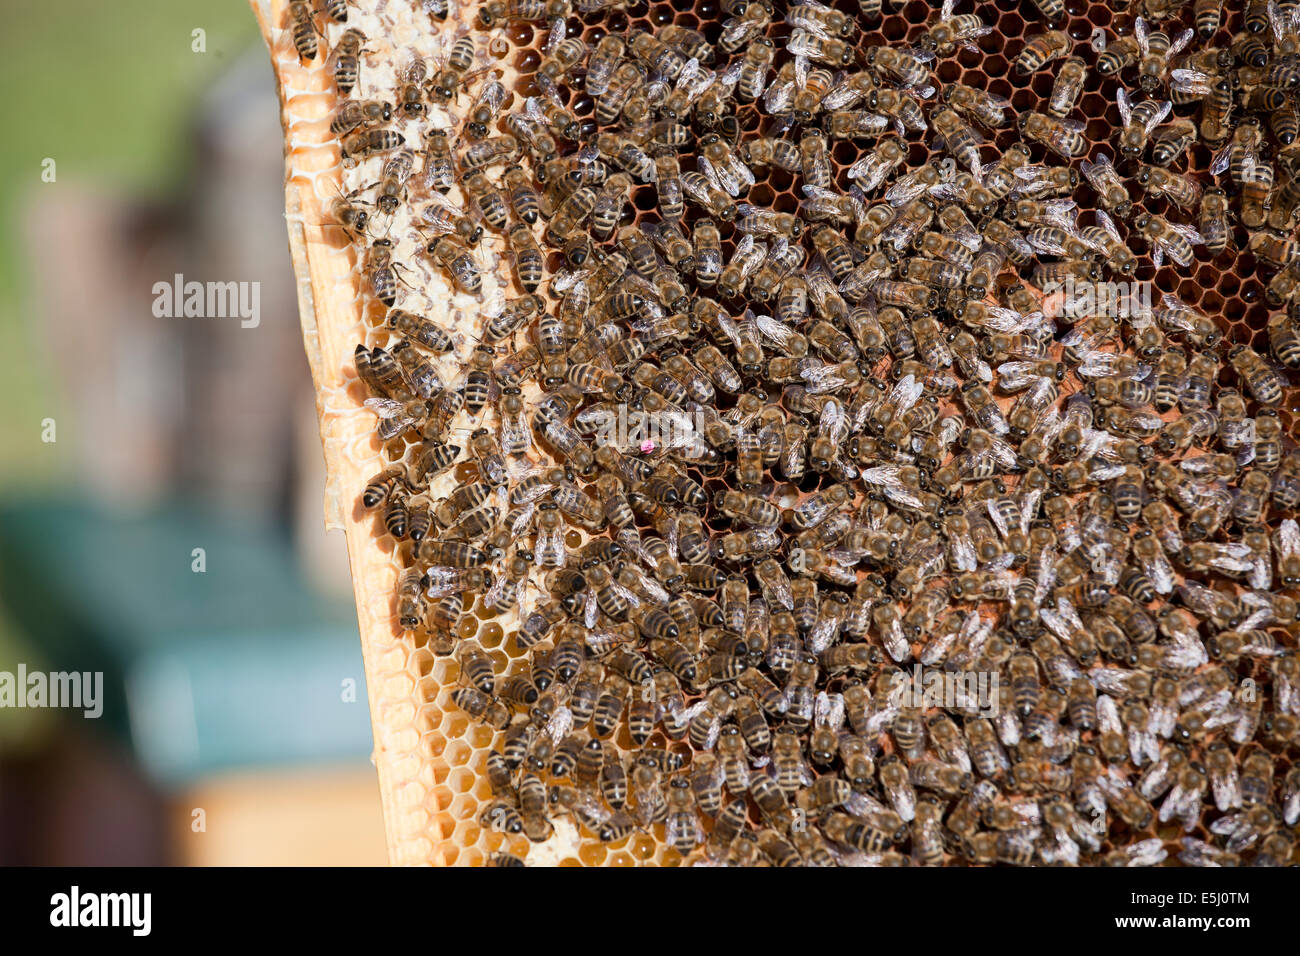 honey bees with queen bee Stock Photo